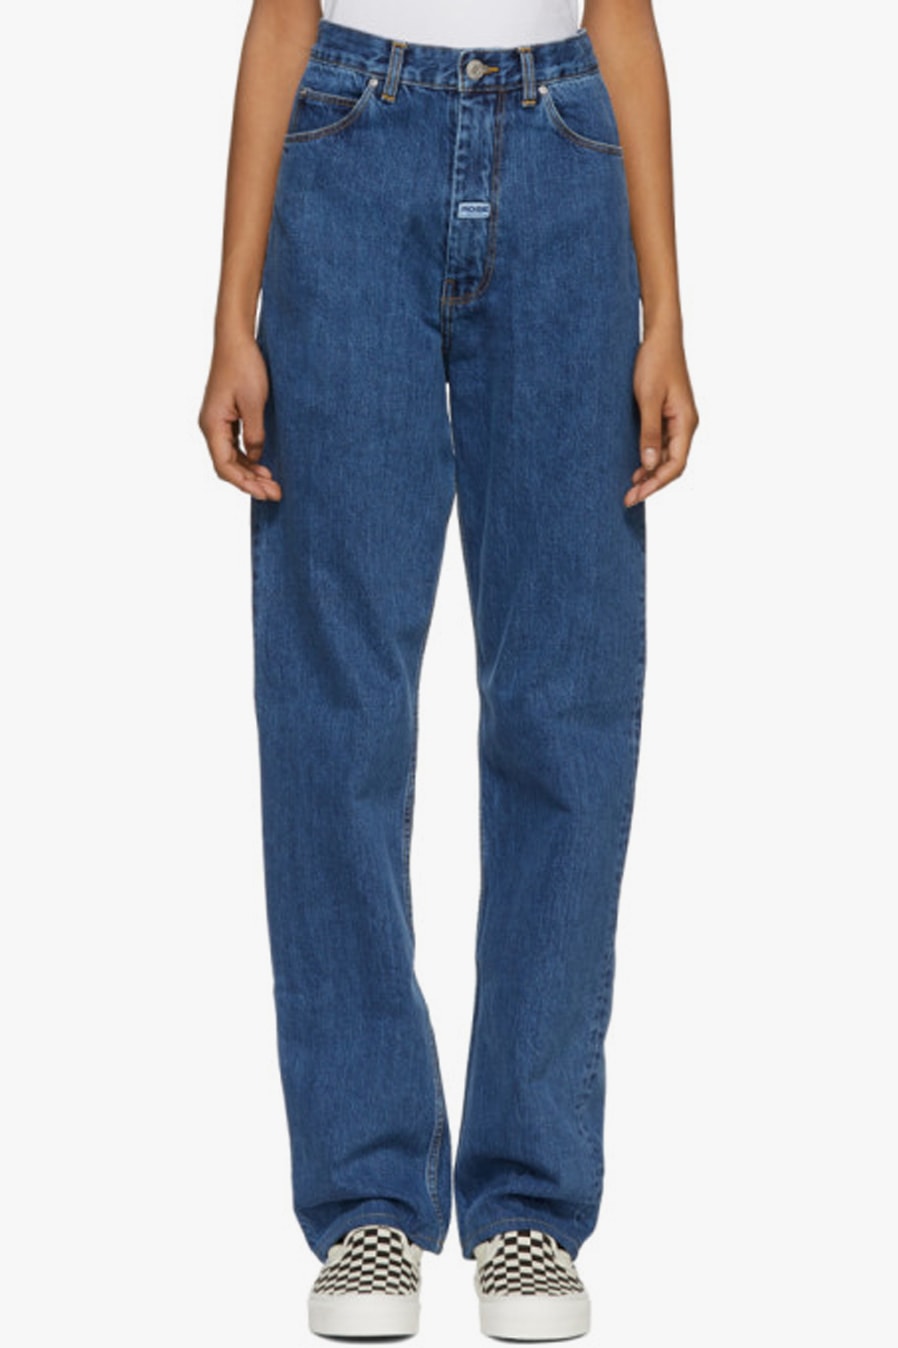 Martine Rose XL Oversized Denim Jeans and Jacket | Hypebae